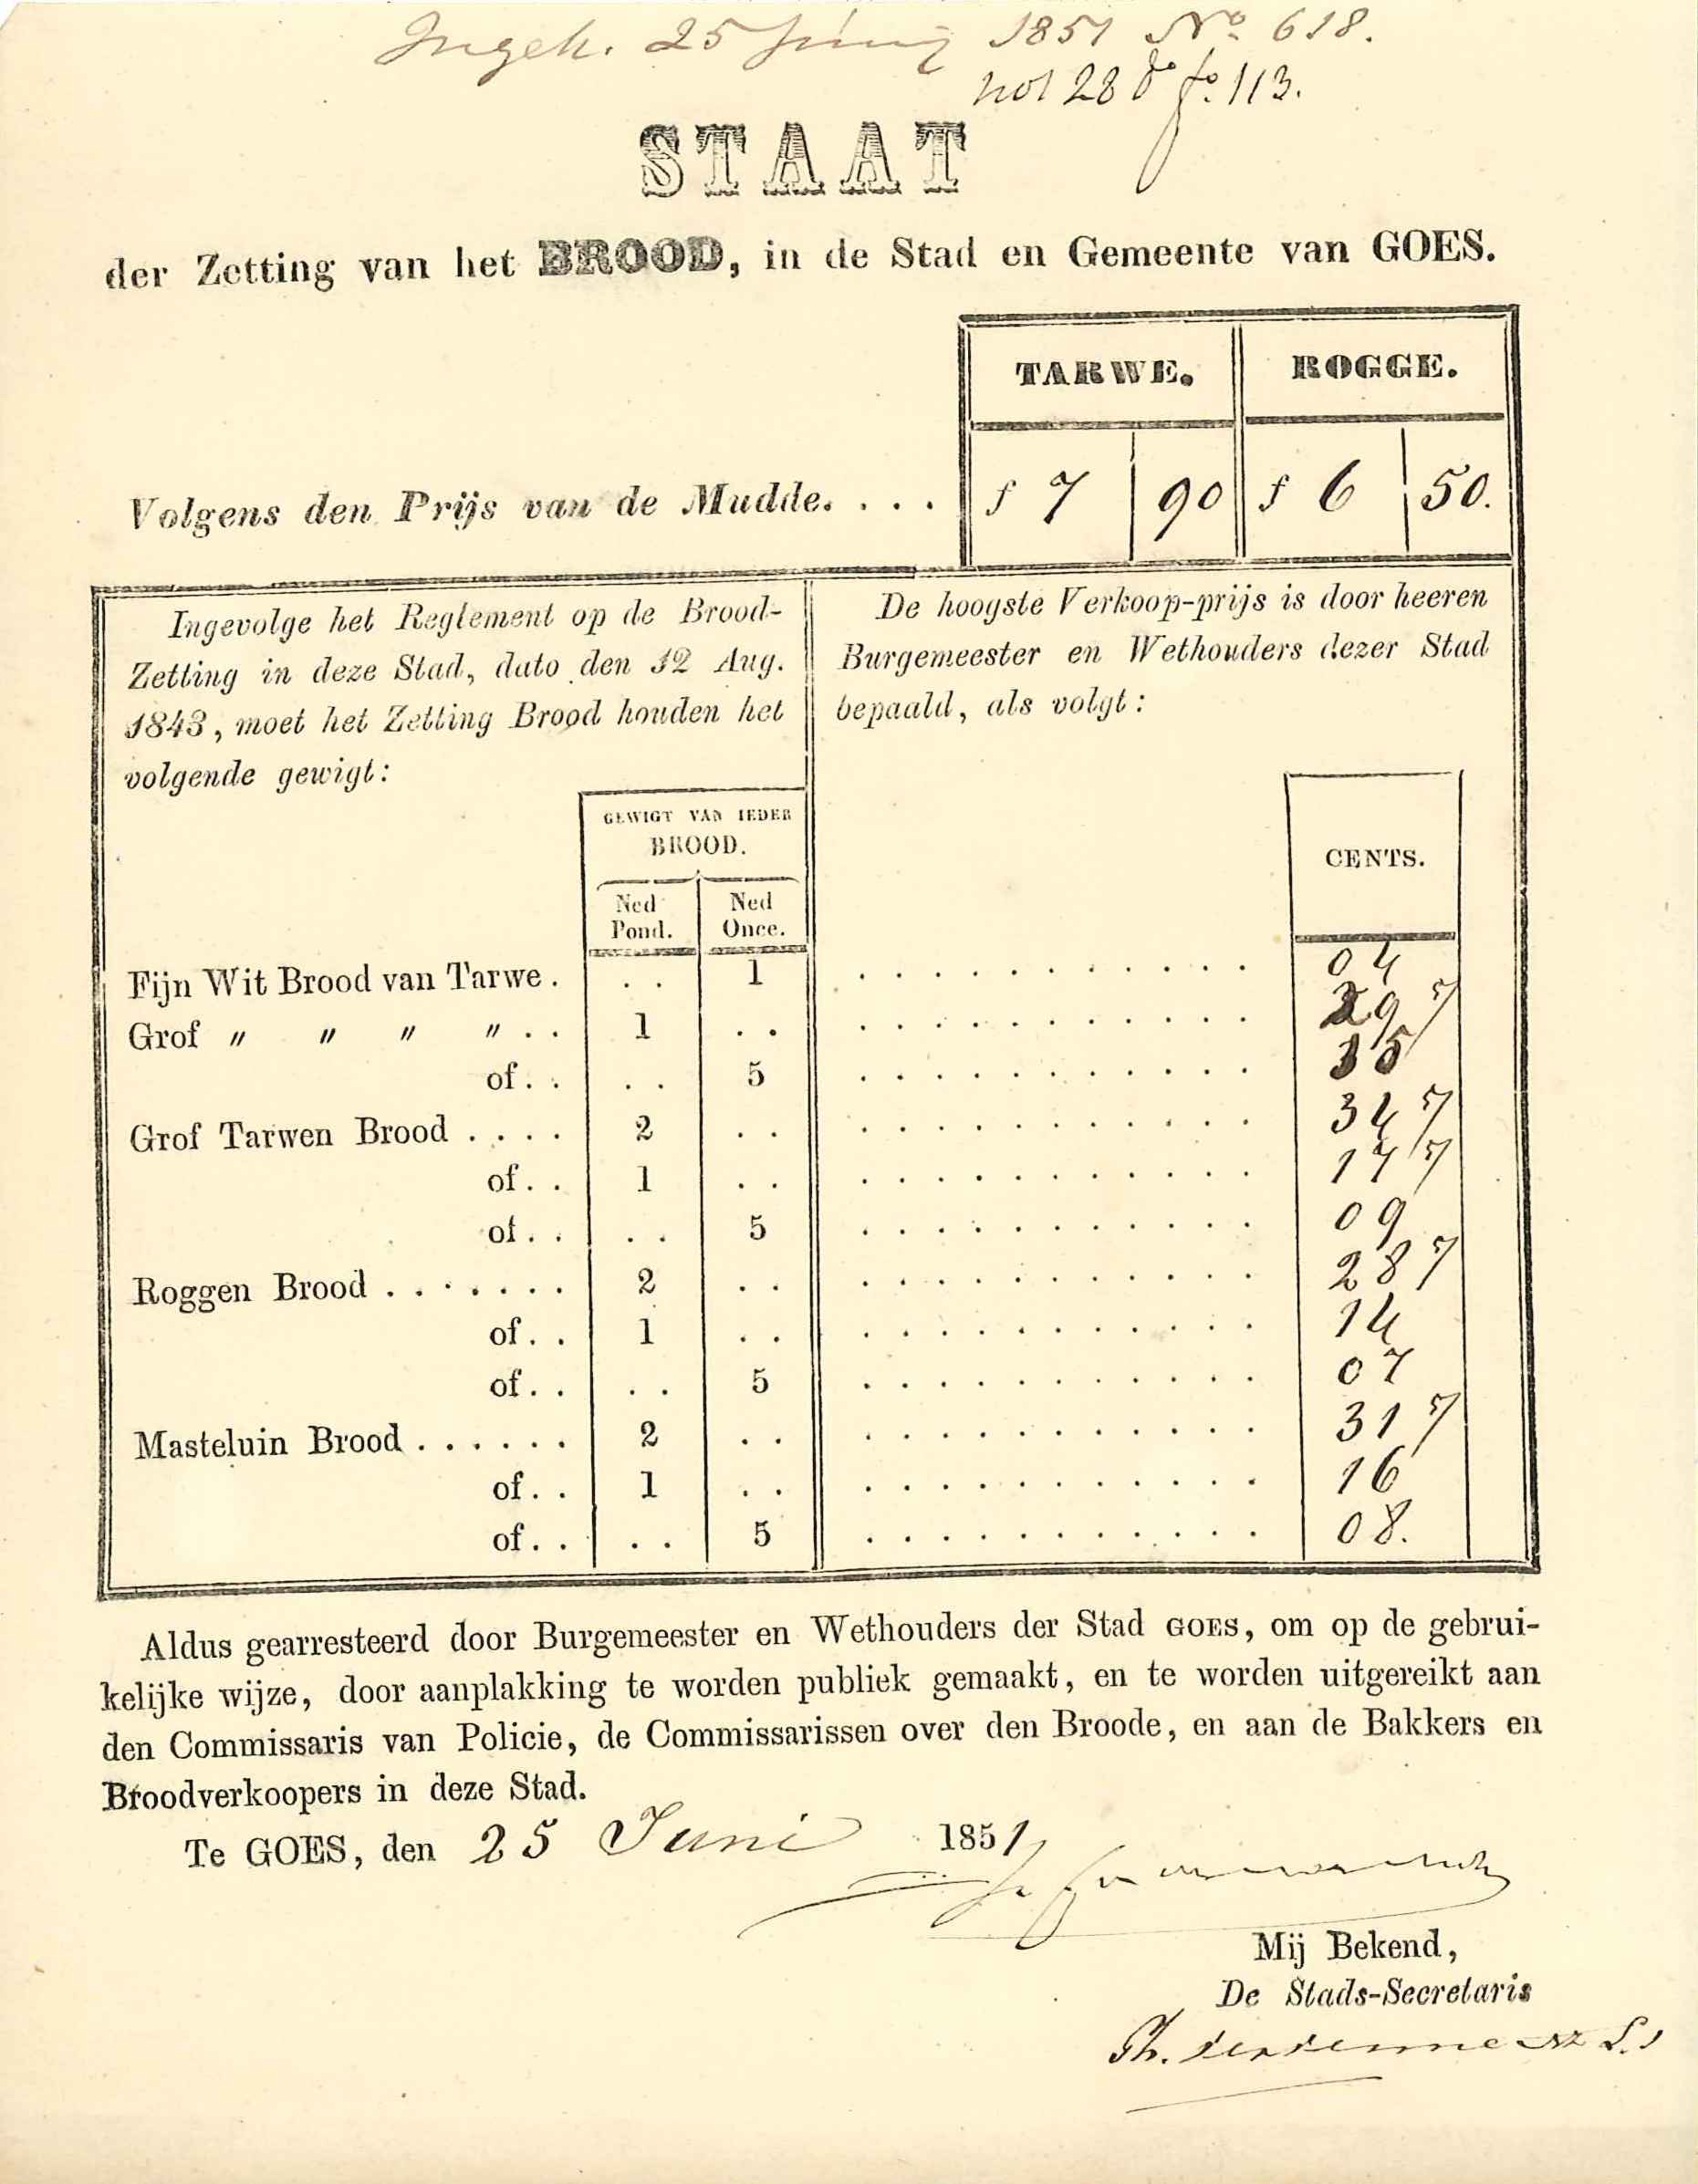 Staat van de gewichten en prijzen voor broodsoorten, 1851. GAG.inv.nr. 622.2, nr. 618.